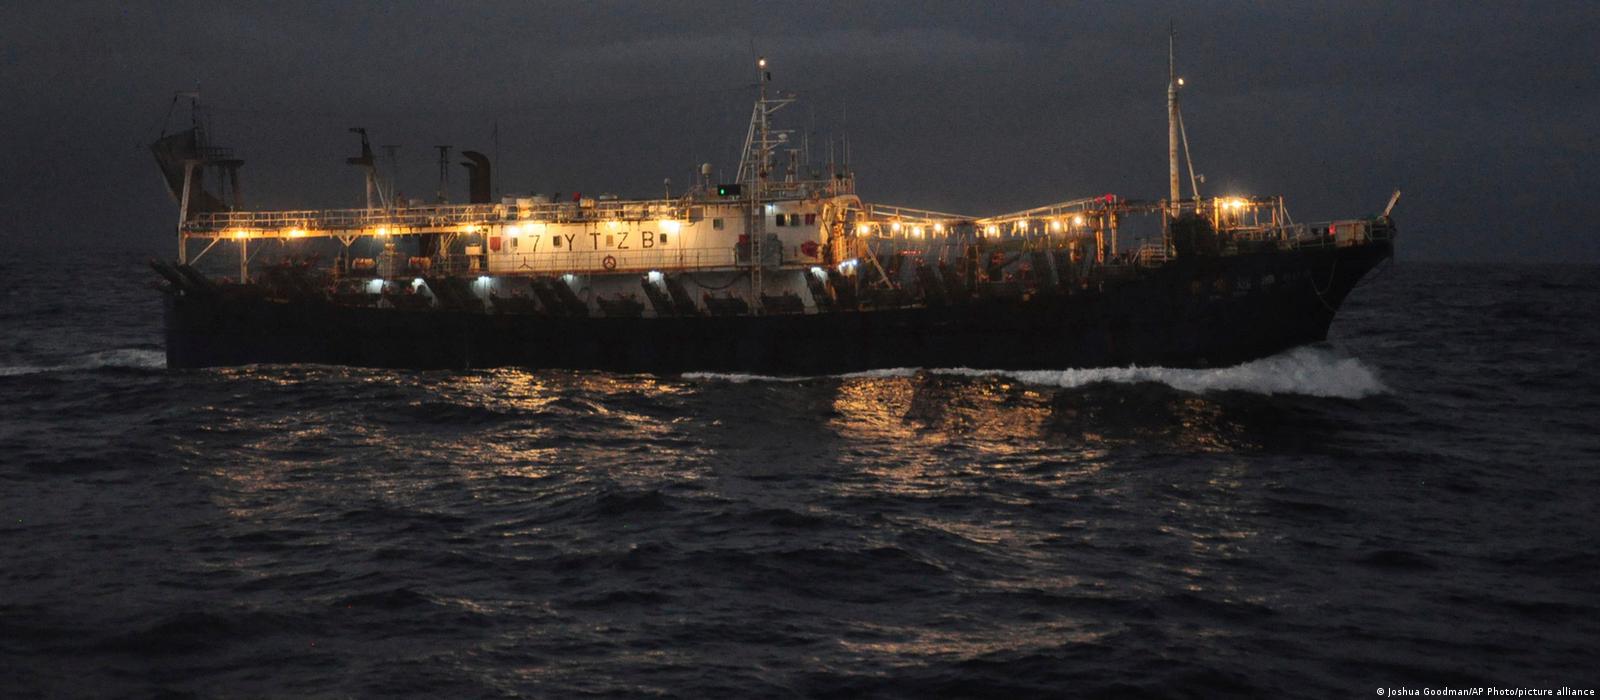 Αλιευτικό σκάφος: Αναποδογύρισε στον Ινδικό Ωκεανό - Αγνοούνται 39 ναυτικοί